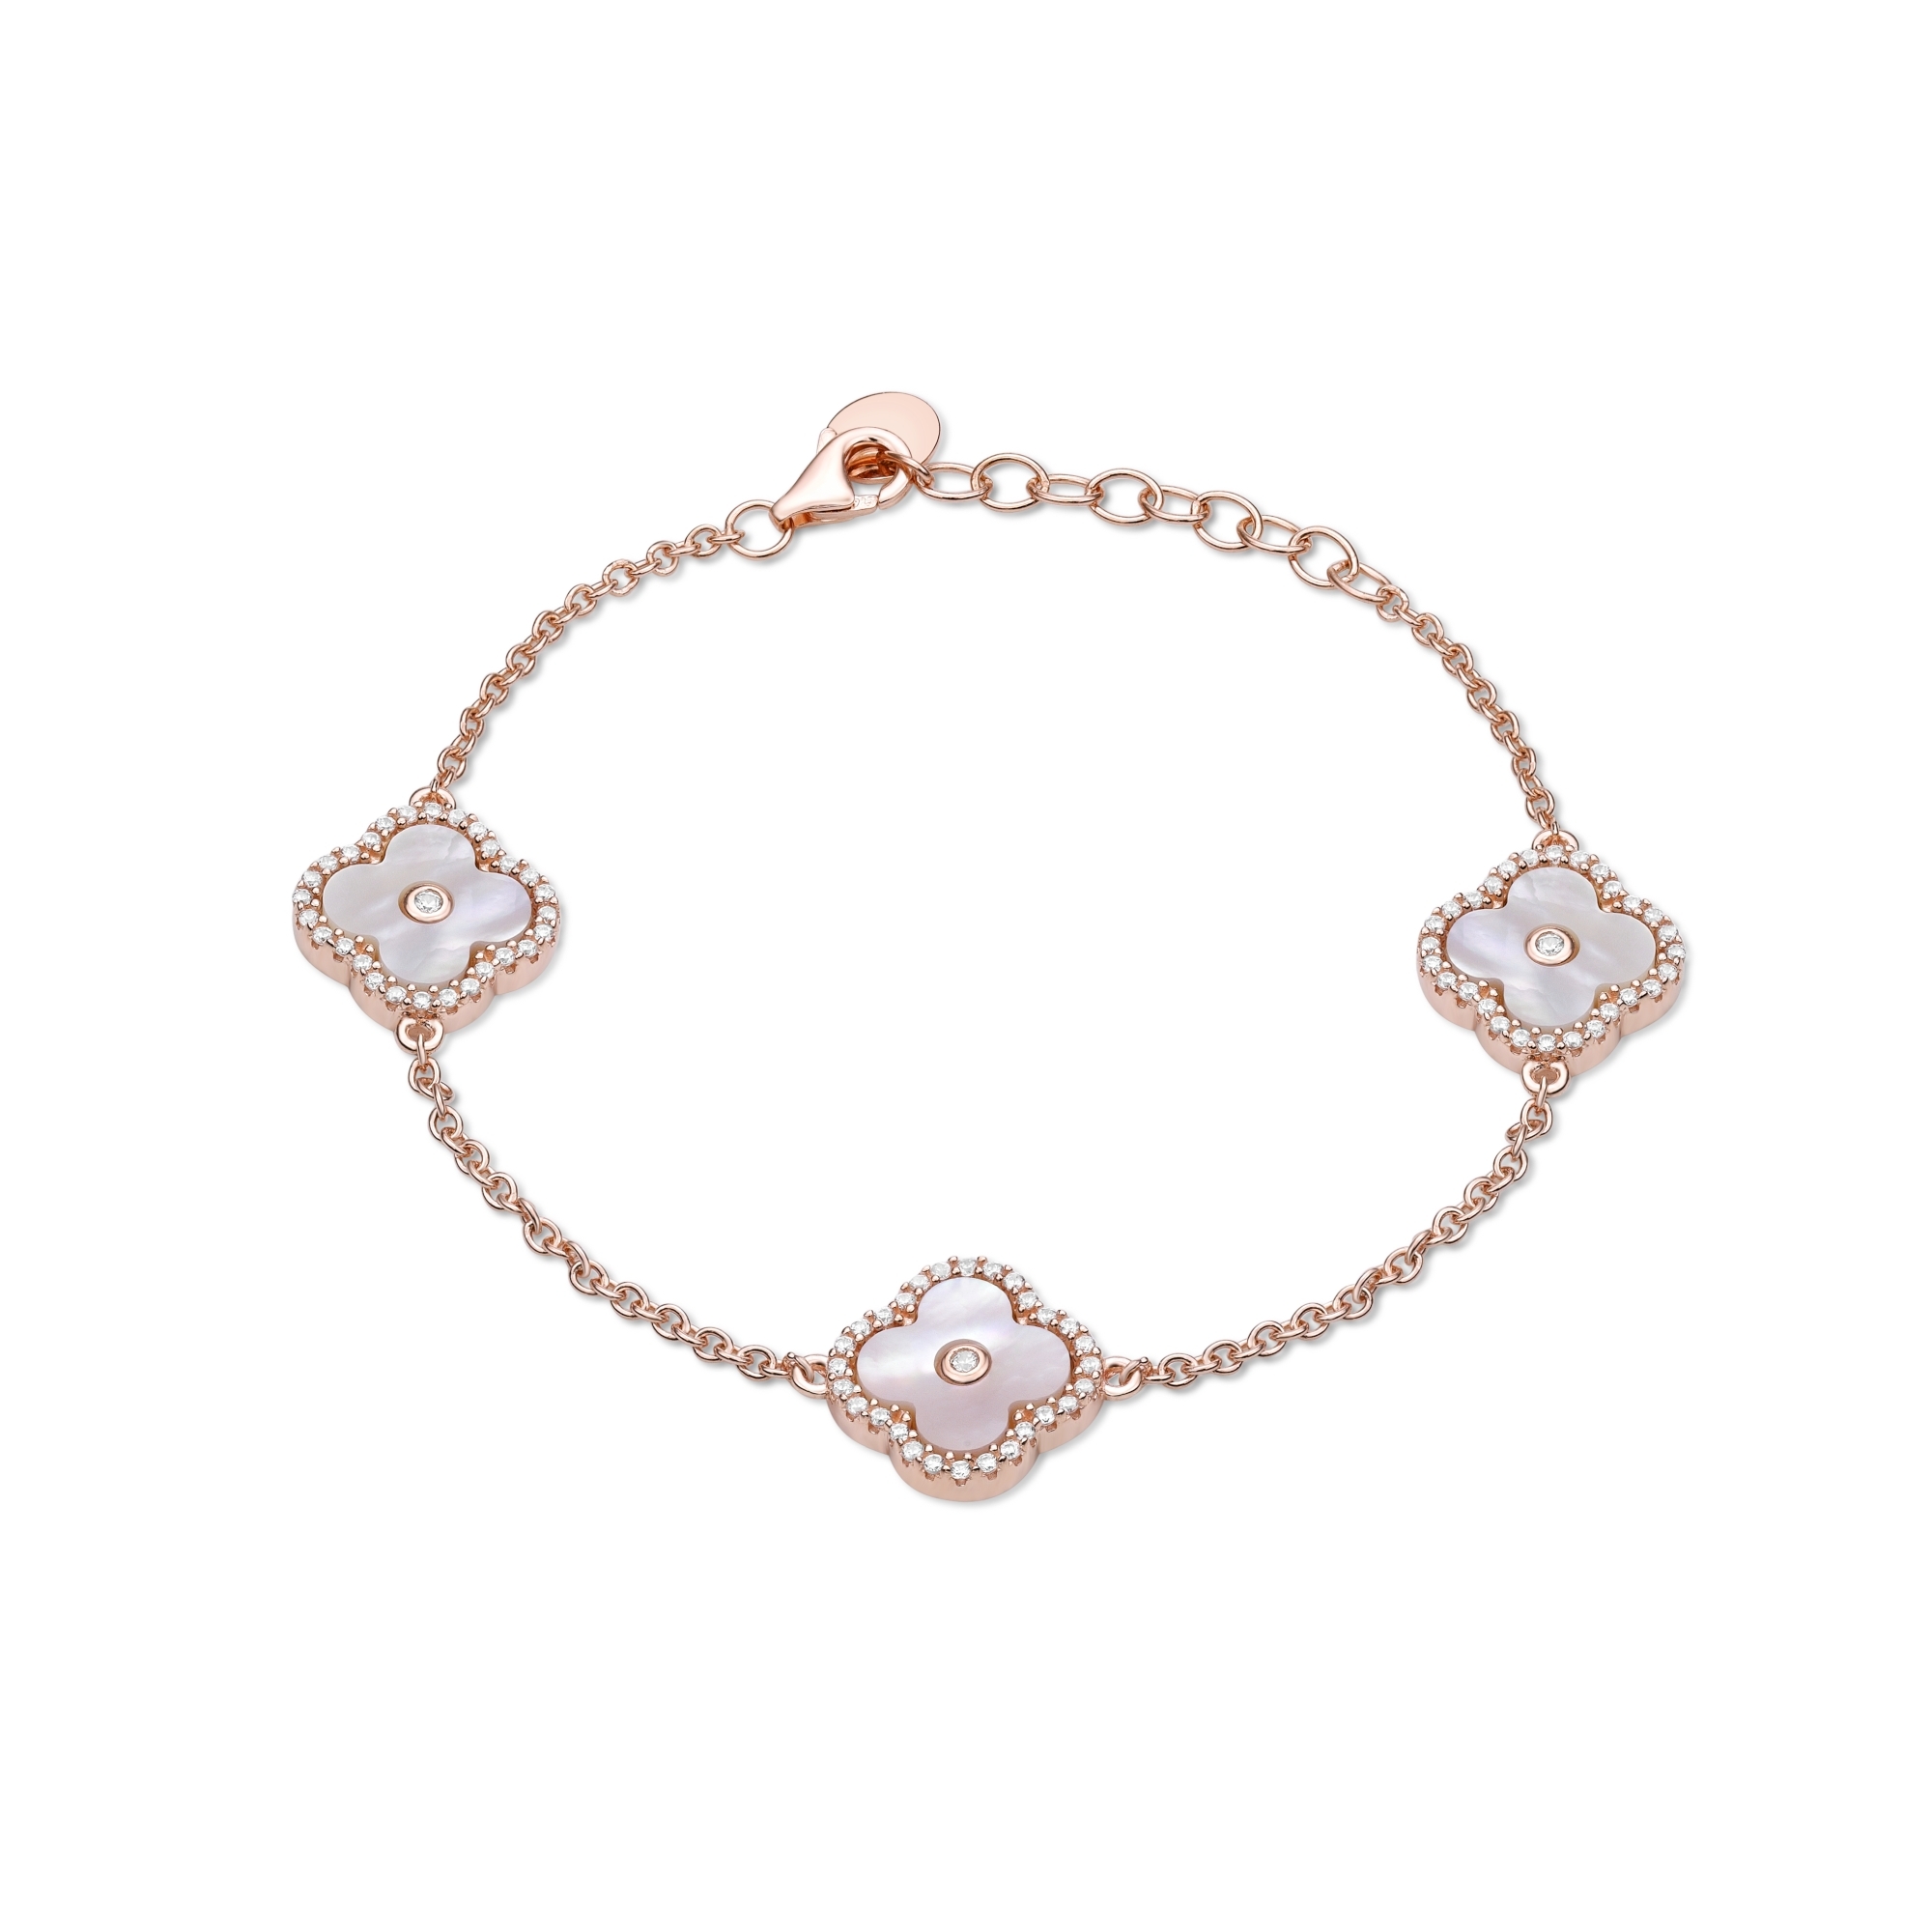 50973-bracelet-fashion-jewelry-sterling-silver-50973-2.jpg